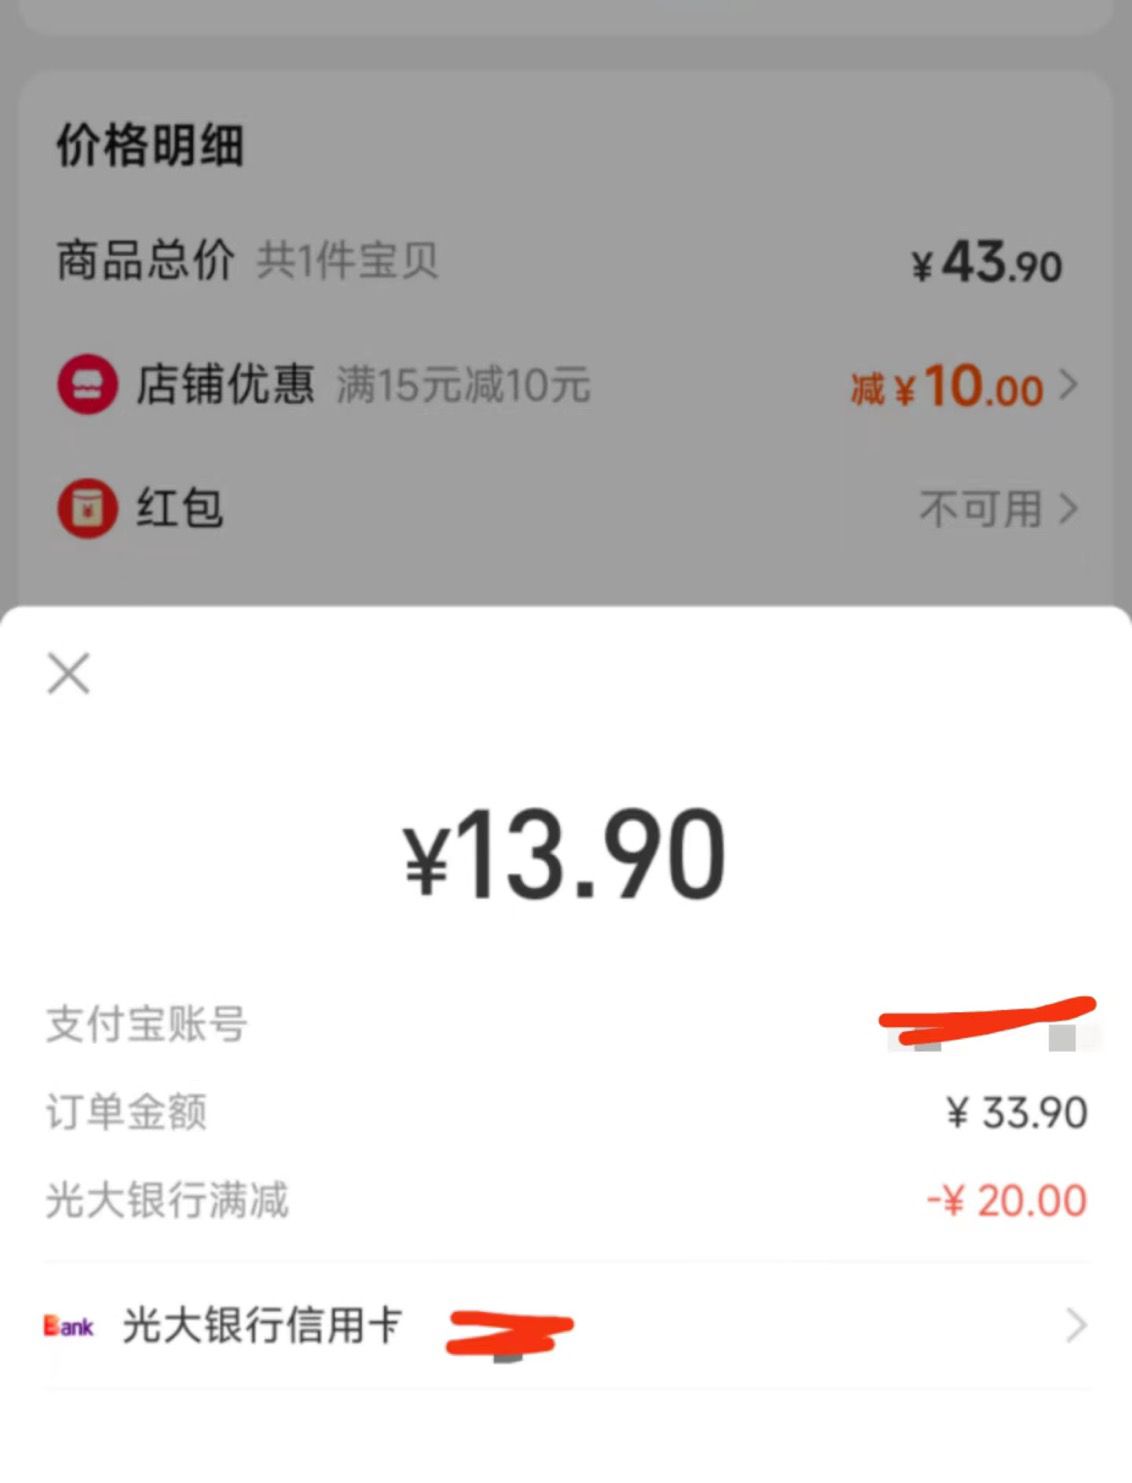 光大xyk支付有30-20-惠小助(52huixz.com)